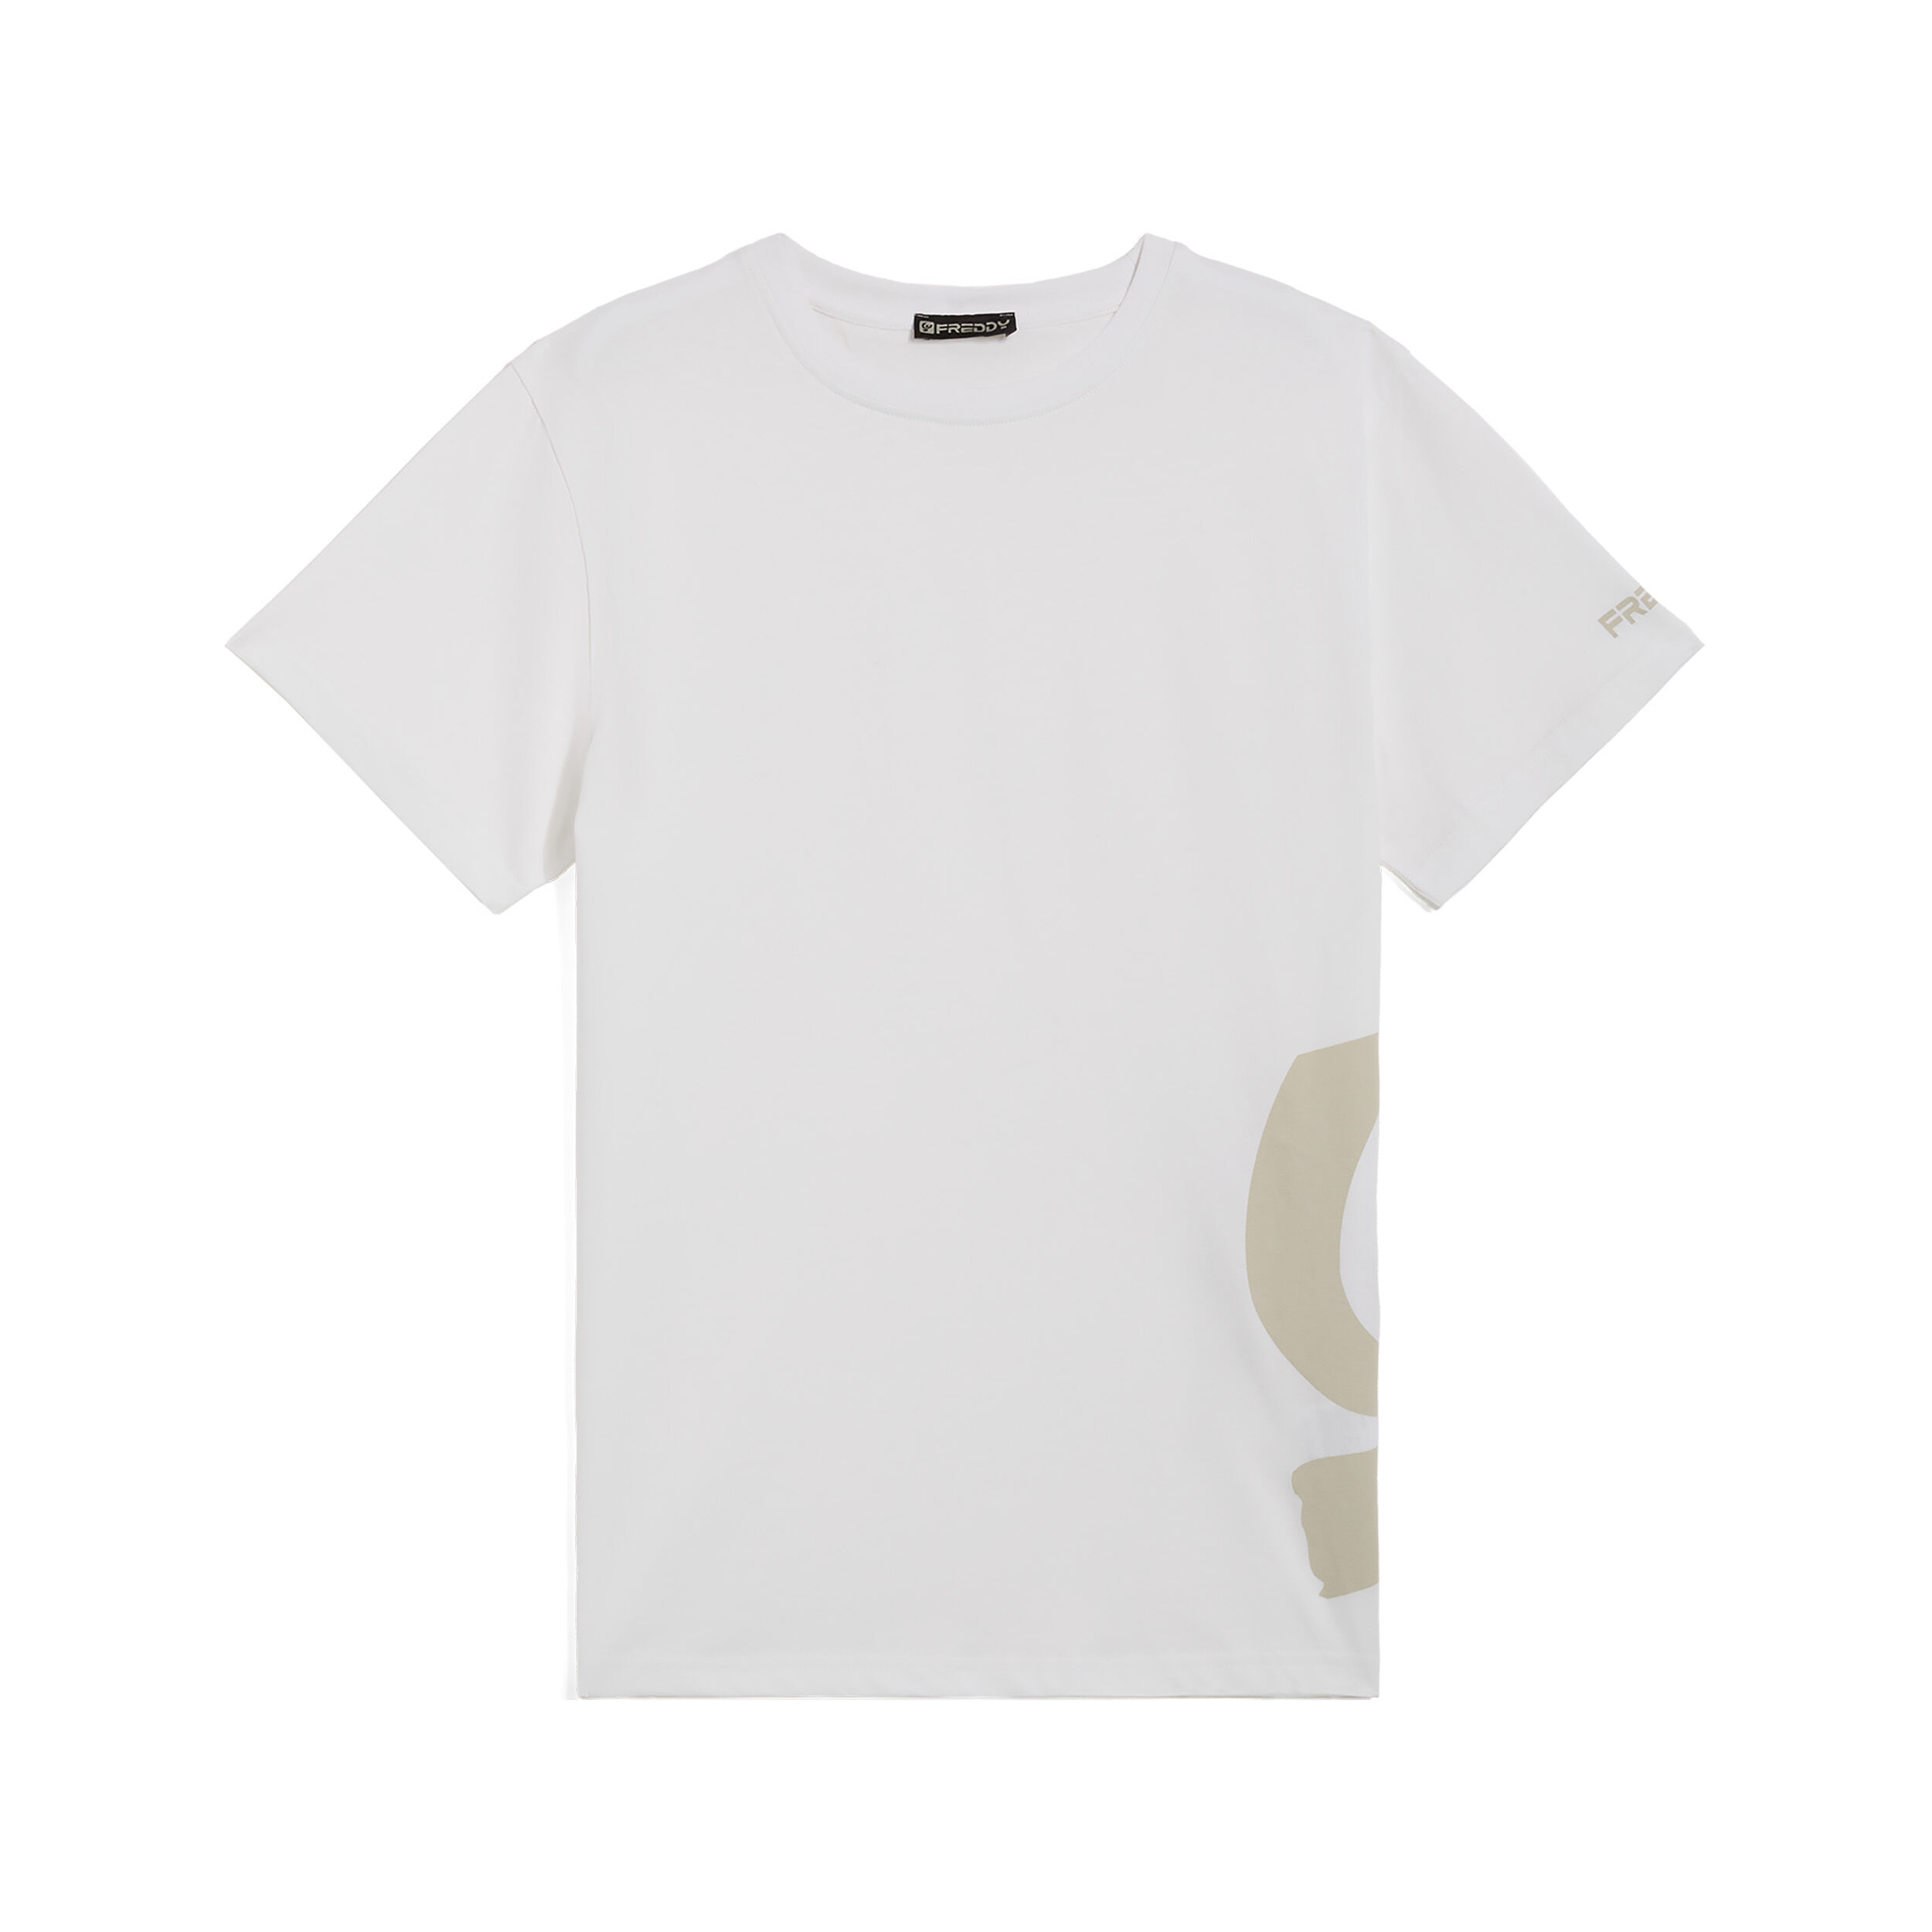 Freddy T-shirt da uomo con maxi logo in tono colore sul fianco Bianco Uomo Extra Large